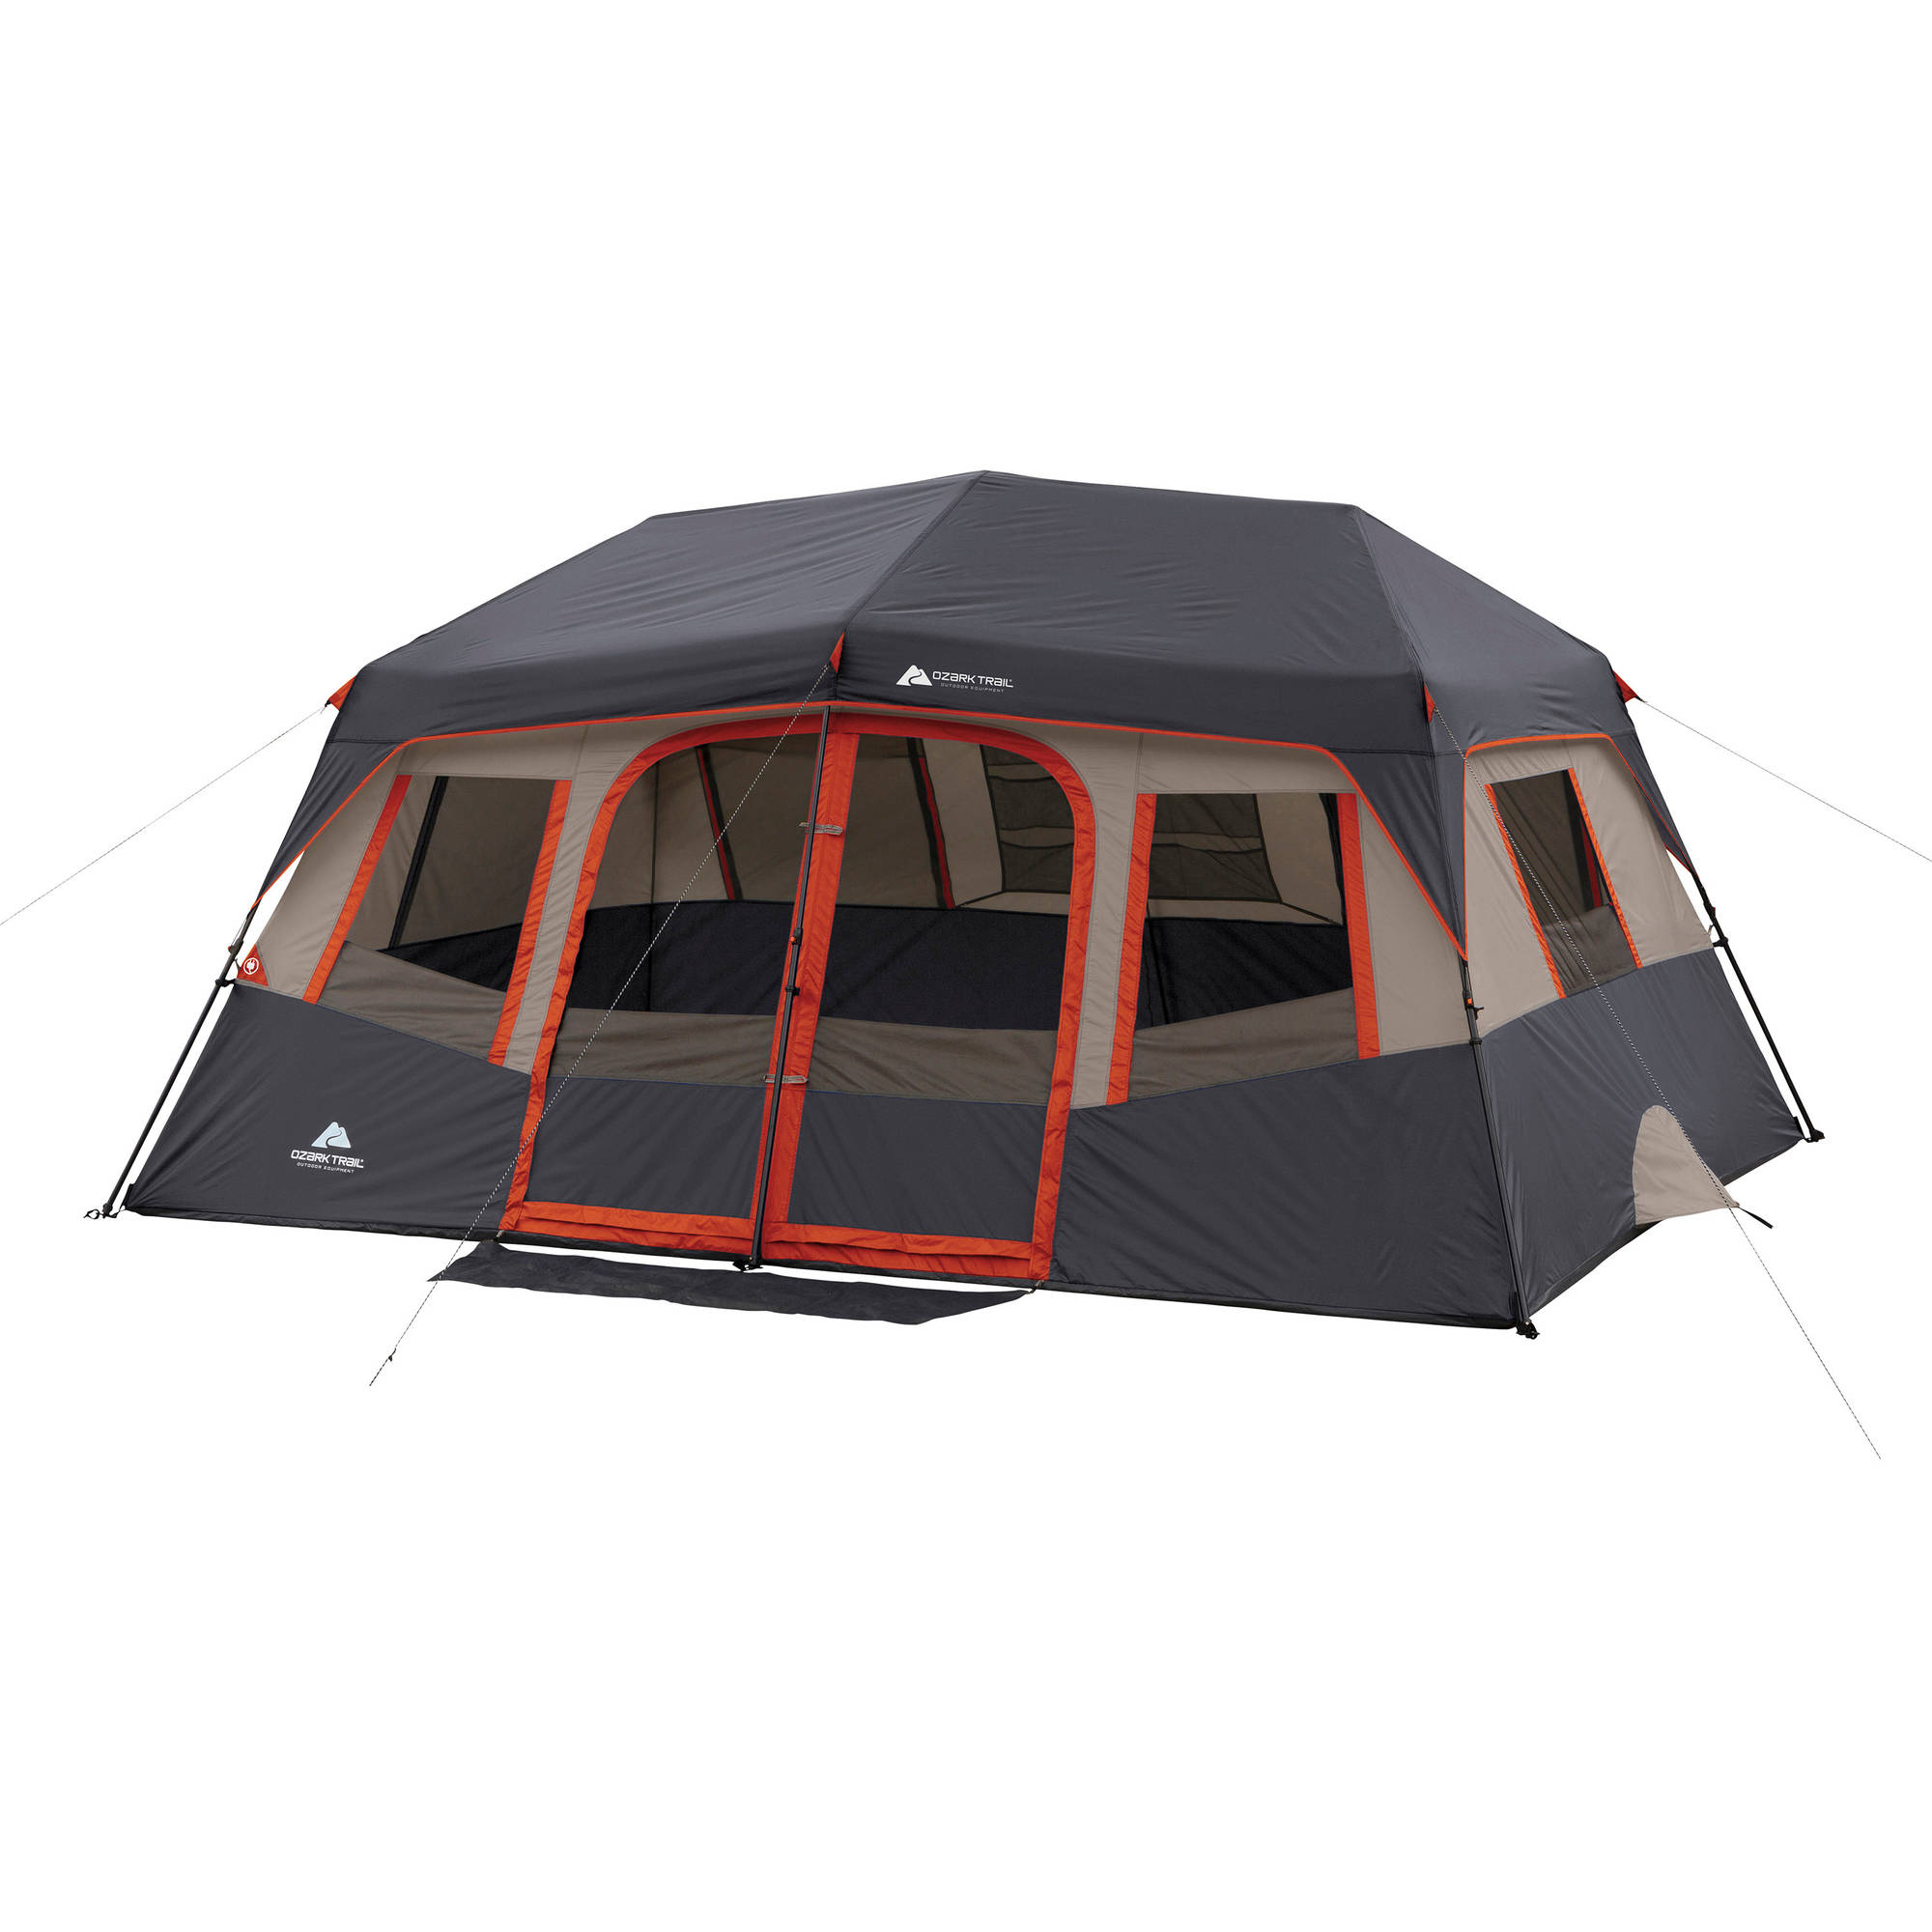 Ozark Trail 14' x 10' 10-Person Instant Cabin Tent - $149